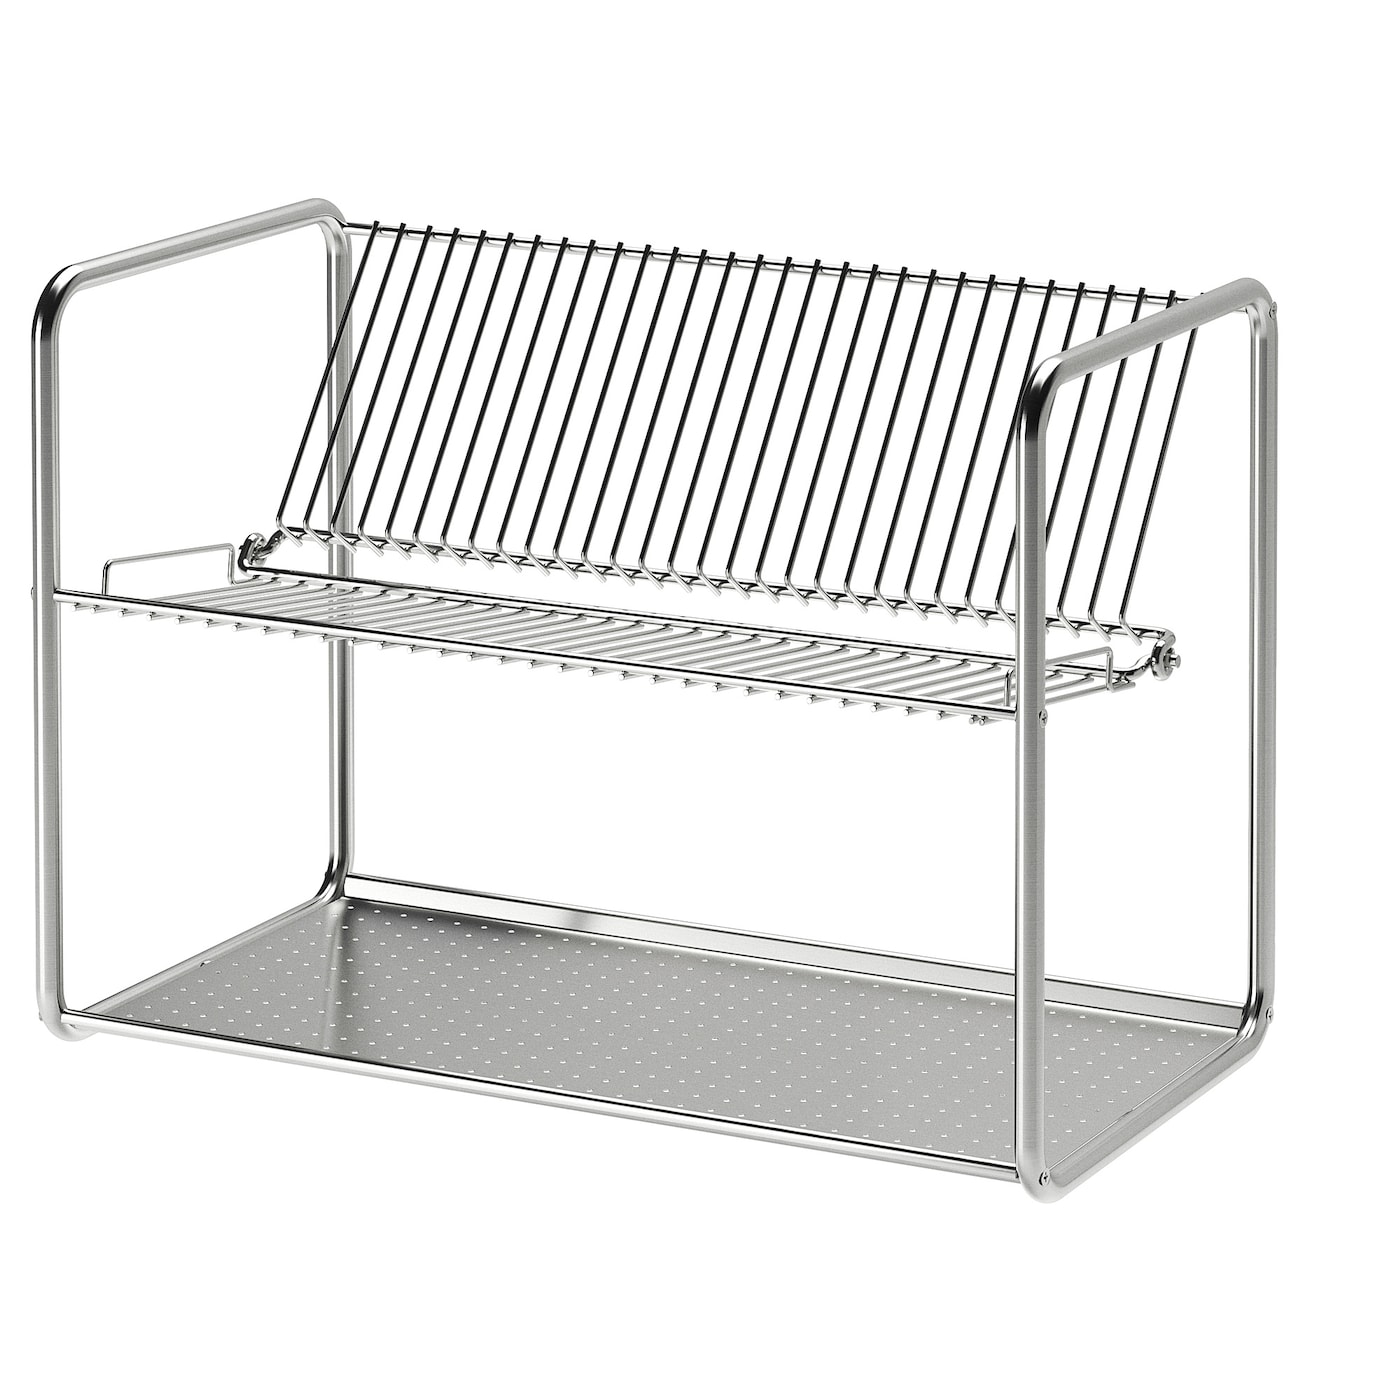 ORDNING ОРДНИНГ Сушилка посудная, нержавеющ сталь, 50x27x36 см IKEA сушилка для столовых приборов со сливом dock серый